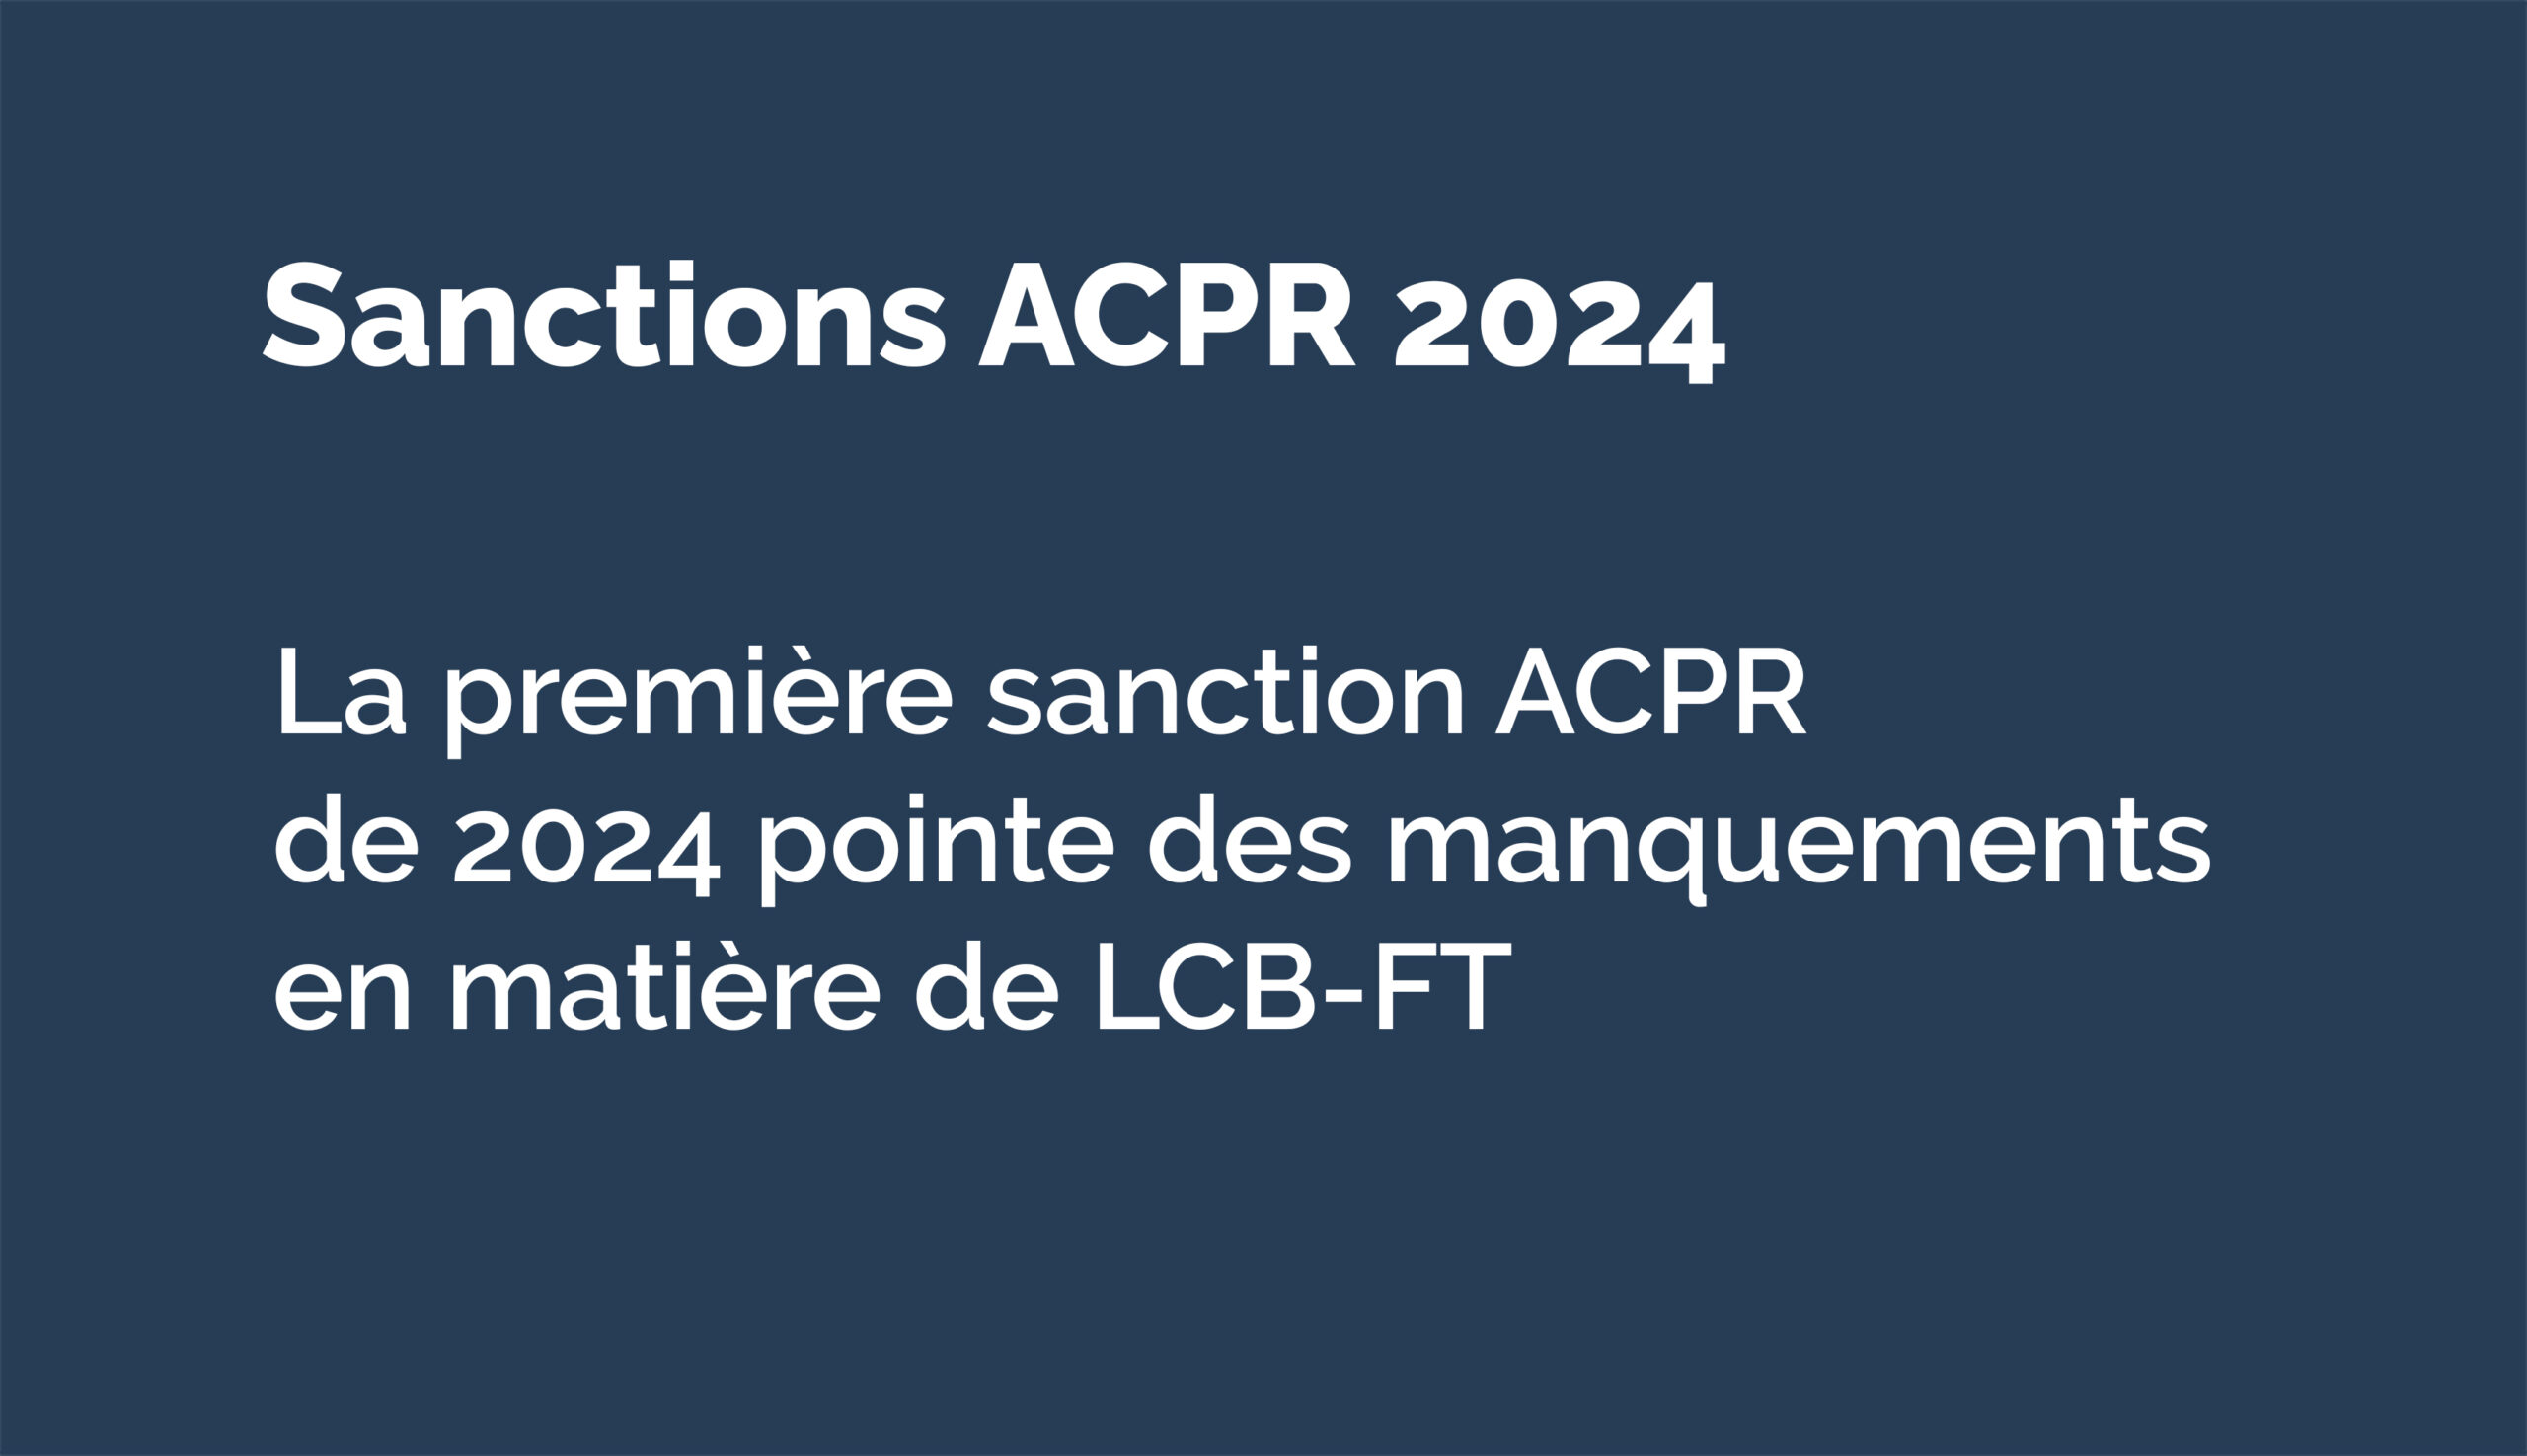 Première sanction de 2024 prononcée par L’ACPR pour manquements en matière de LCB-FT